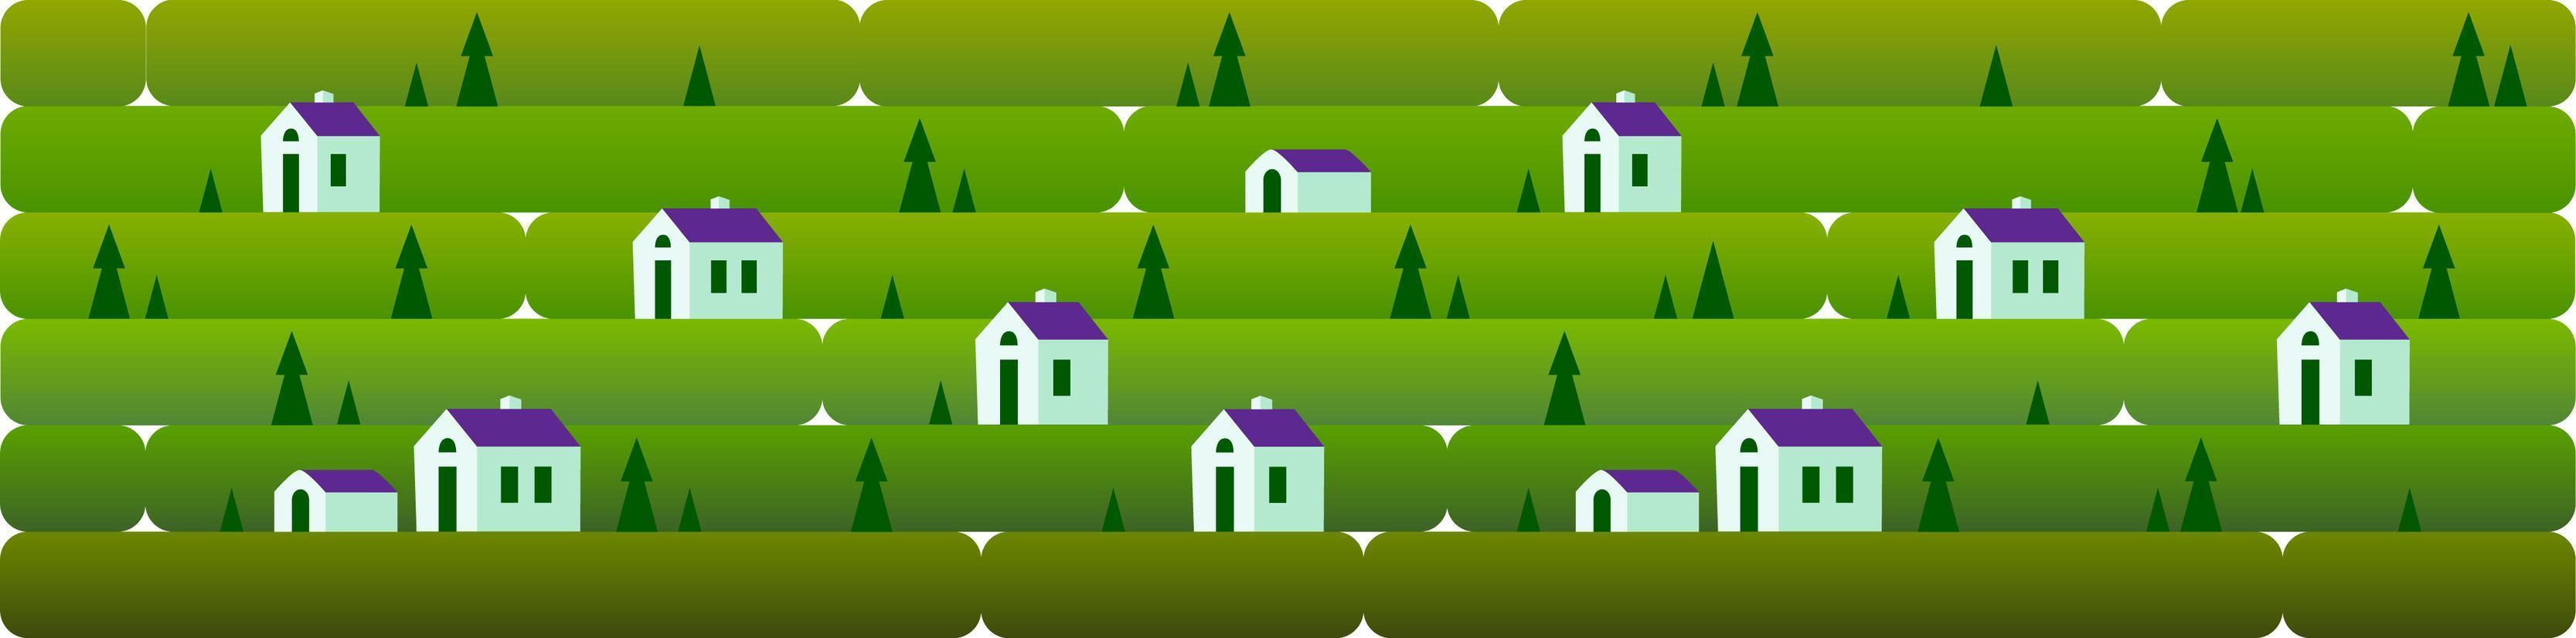 banner un paisaje nocturno con casitas, sobre un fondo de hierba, naturaleza, colinas. ilustración vectorial en estilo plano para diseño, juegos o sitios web vector